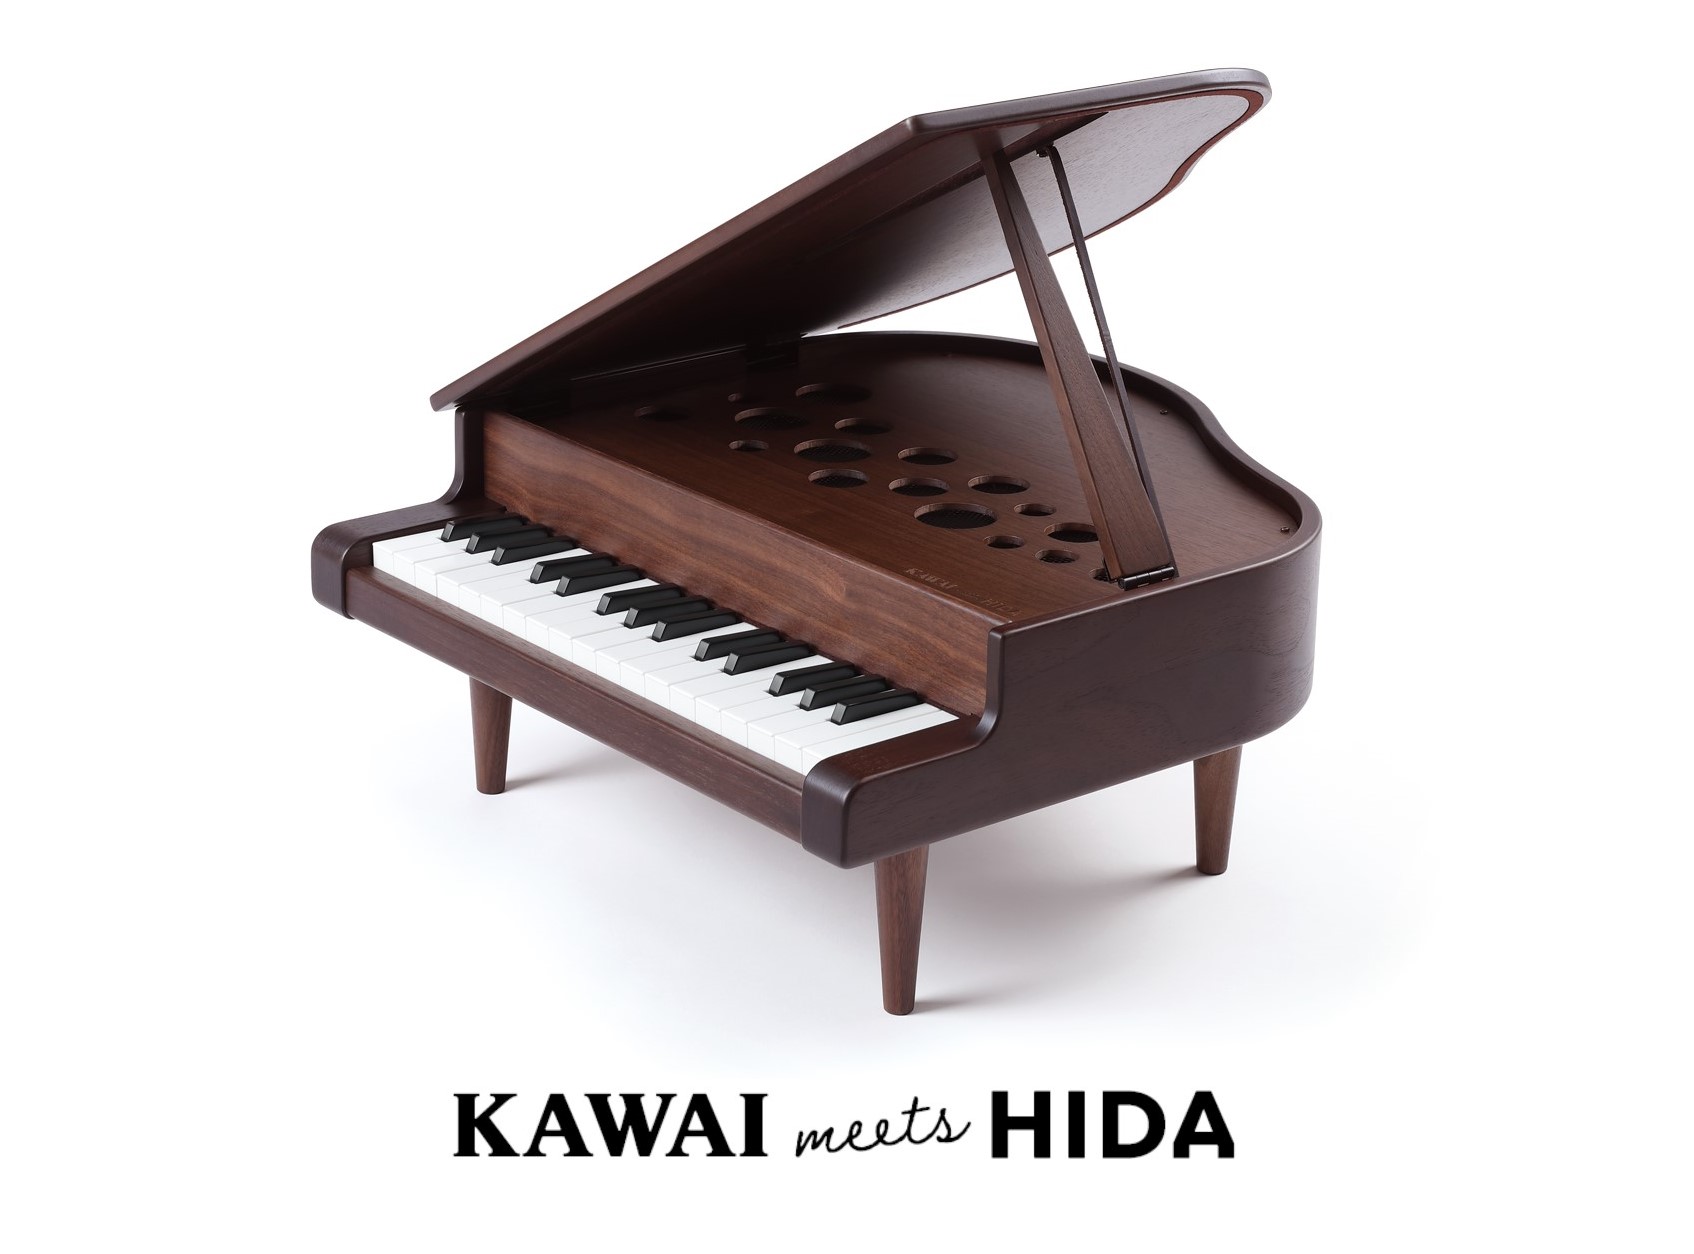 小さなピアニストに 小さな本物を Kawai Meets Hida ミニグランドピアノ 販売開始 株式会社河合楽器製作所のプレスリリース